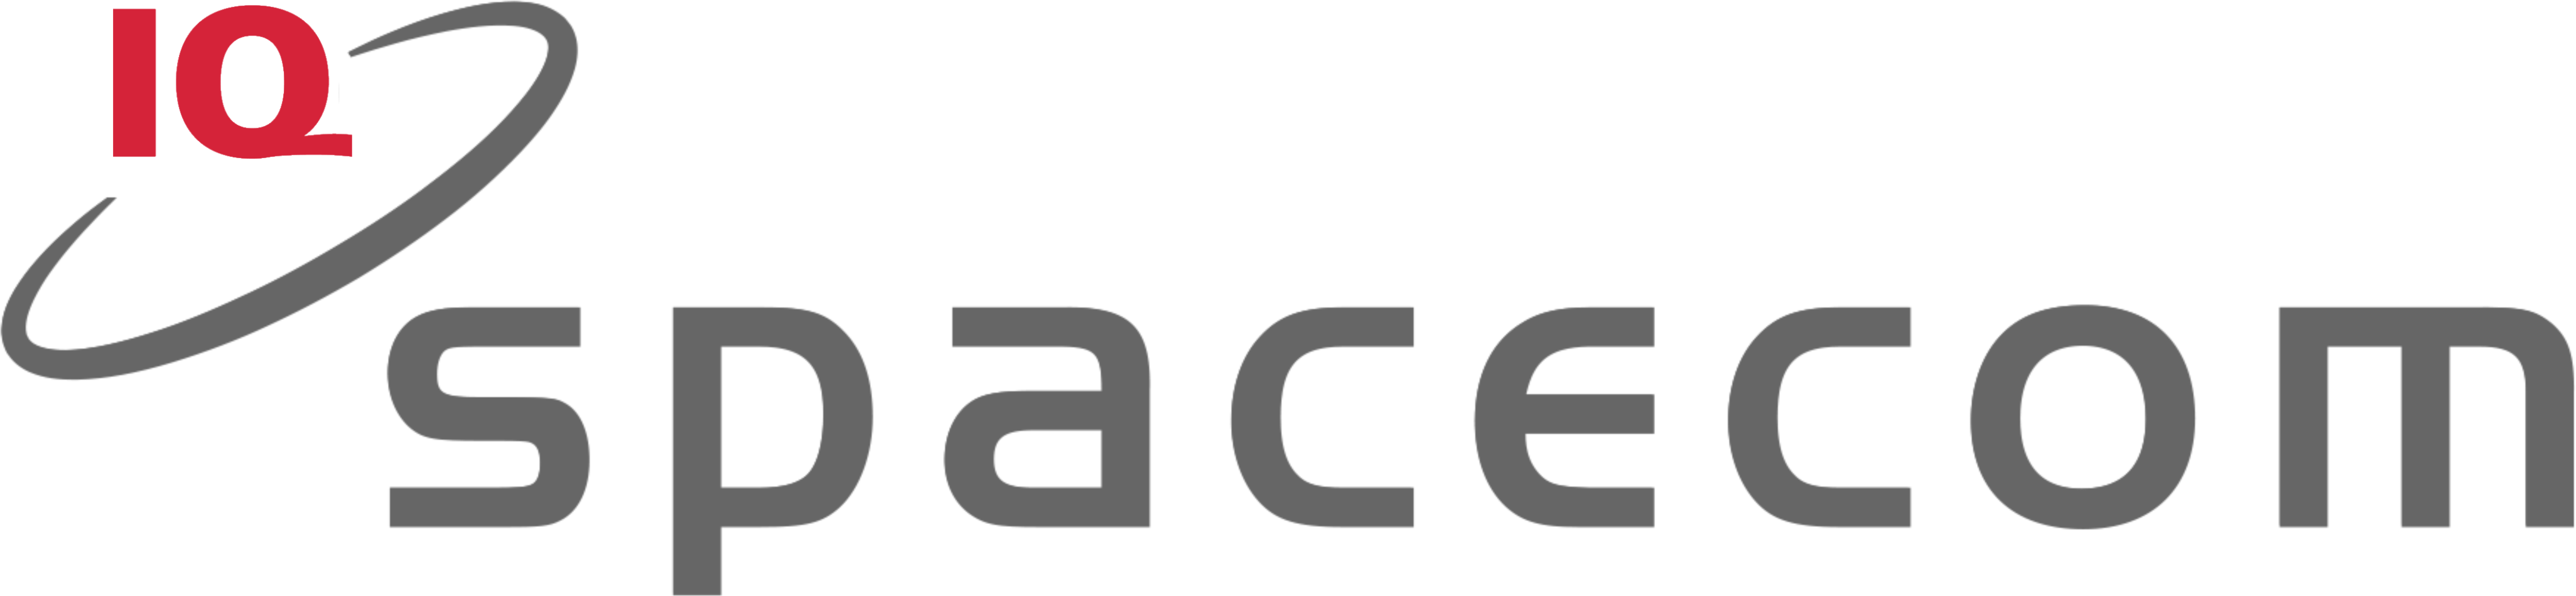 Space.com Logo - S-NET